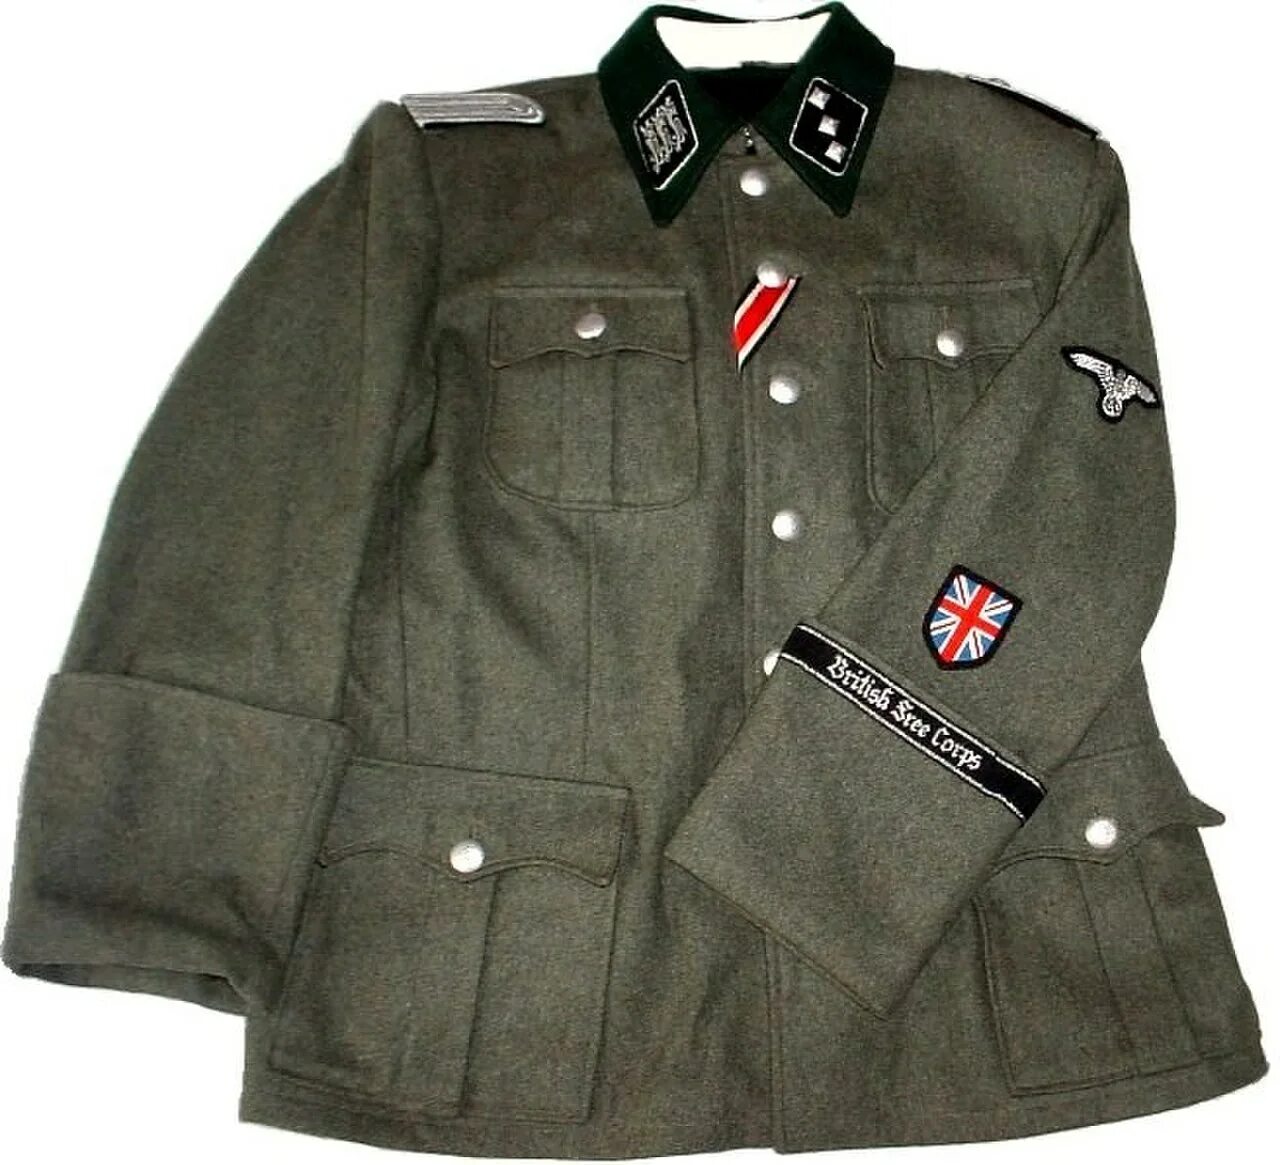 Управление сс. SD Waffen SS форма. Униформа СС m36. Британский добровольческий корпус Ваффен СС. Китель м36 Вермахт.